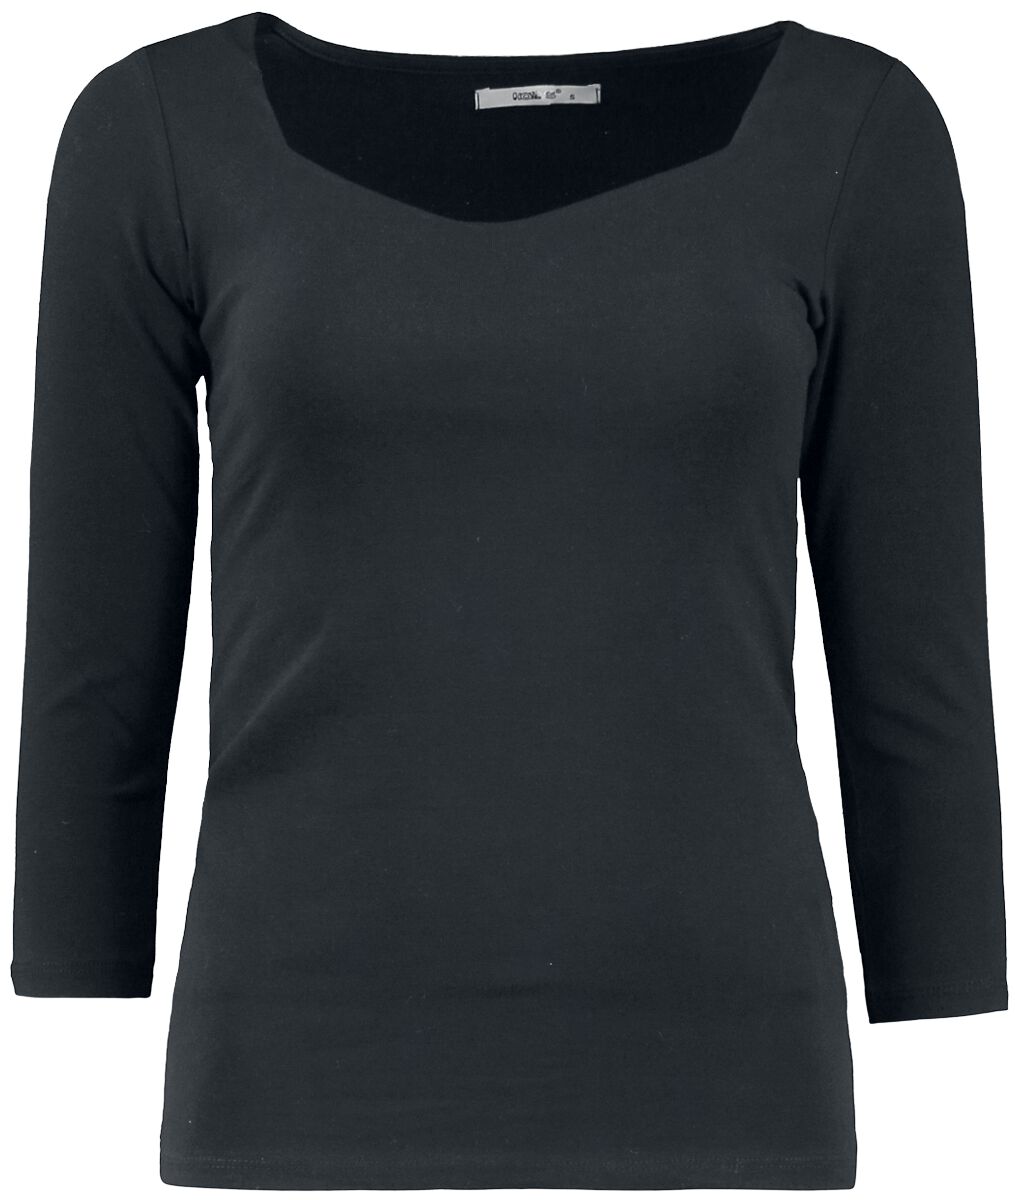 T-shirt manches longues de Hailys - Noa - XS à XXL - pour Femme - noir